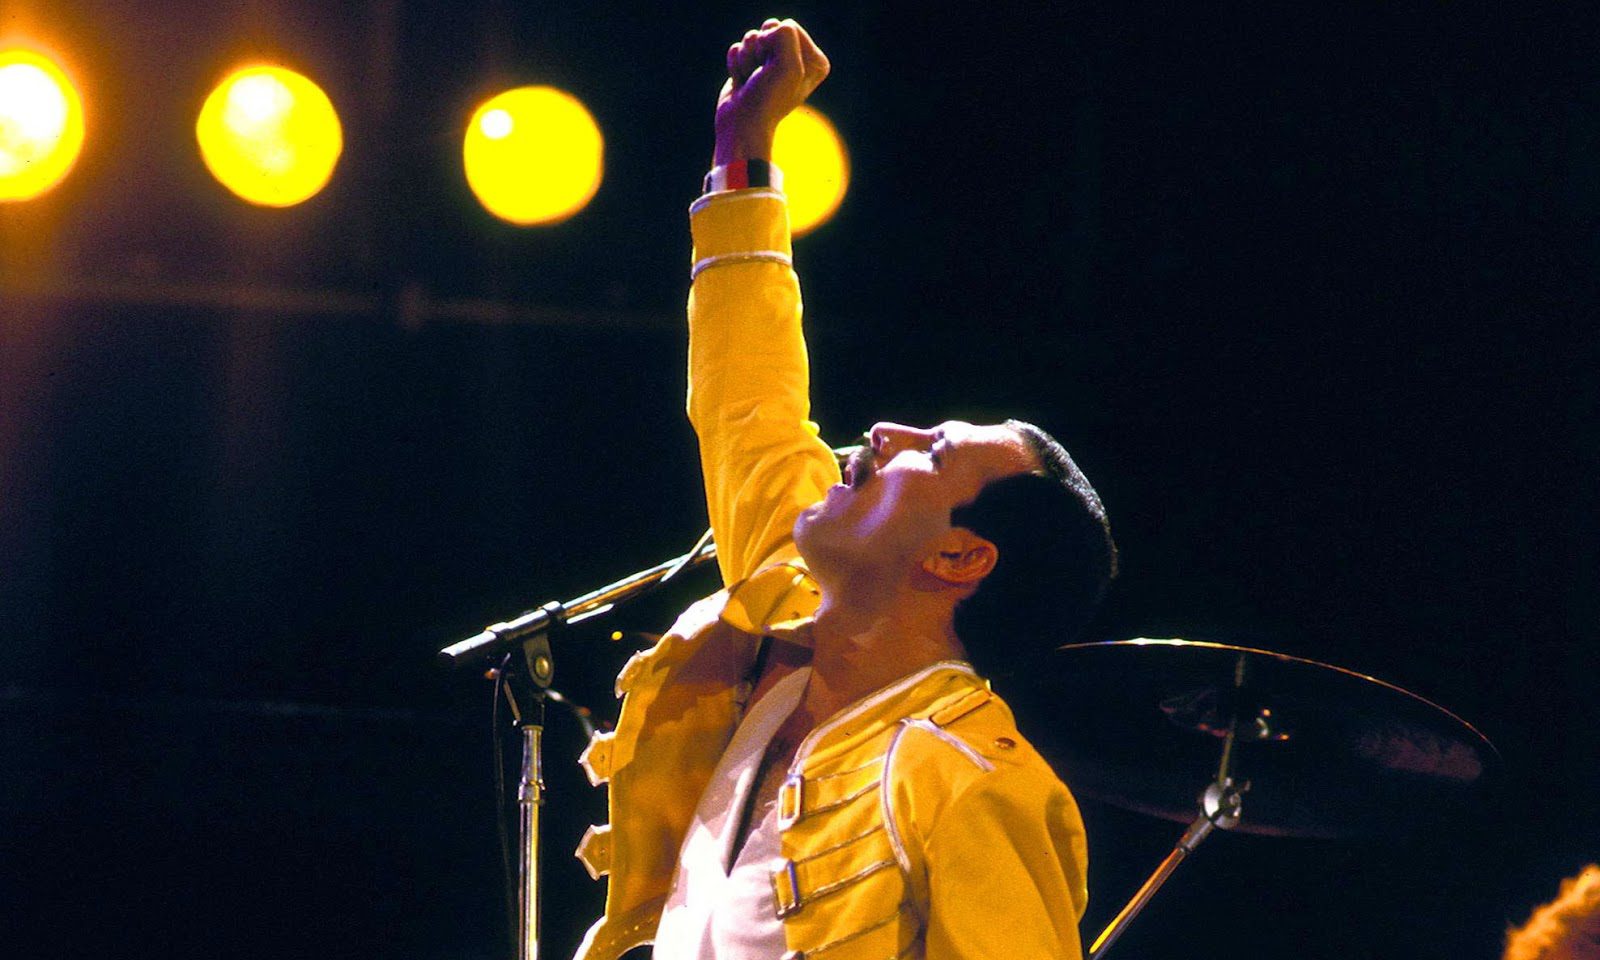 Farookh Bulsara alias Freddie Mercury